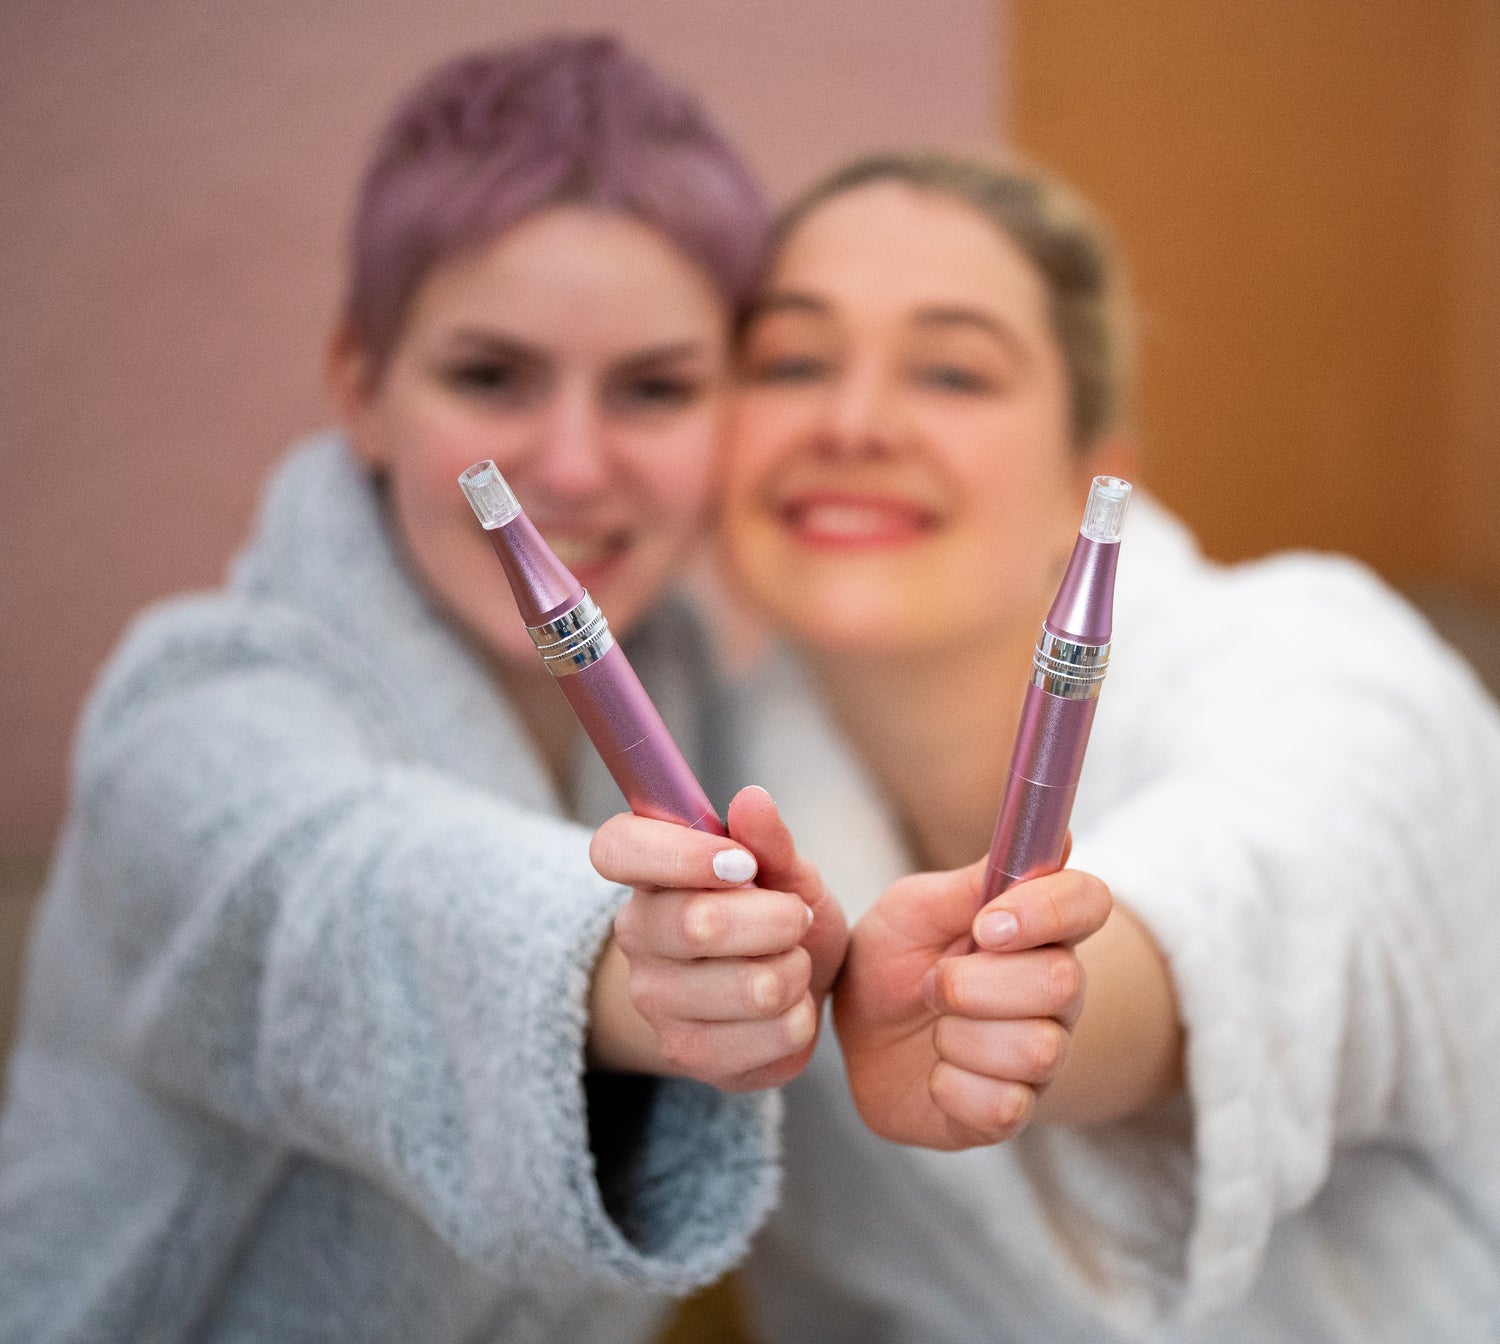 Marie und Luna, die Gründerinnen des Skinglowup onlineshops zeigen den Microneedling Pen / Dermapen